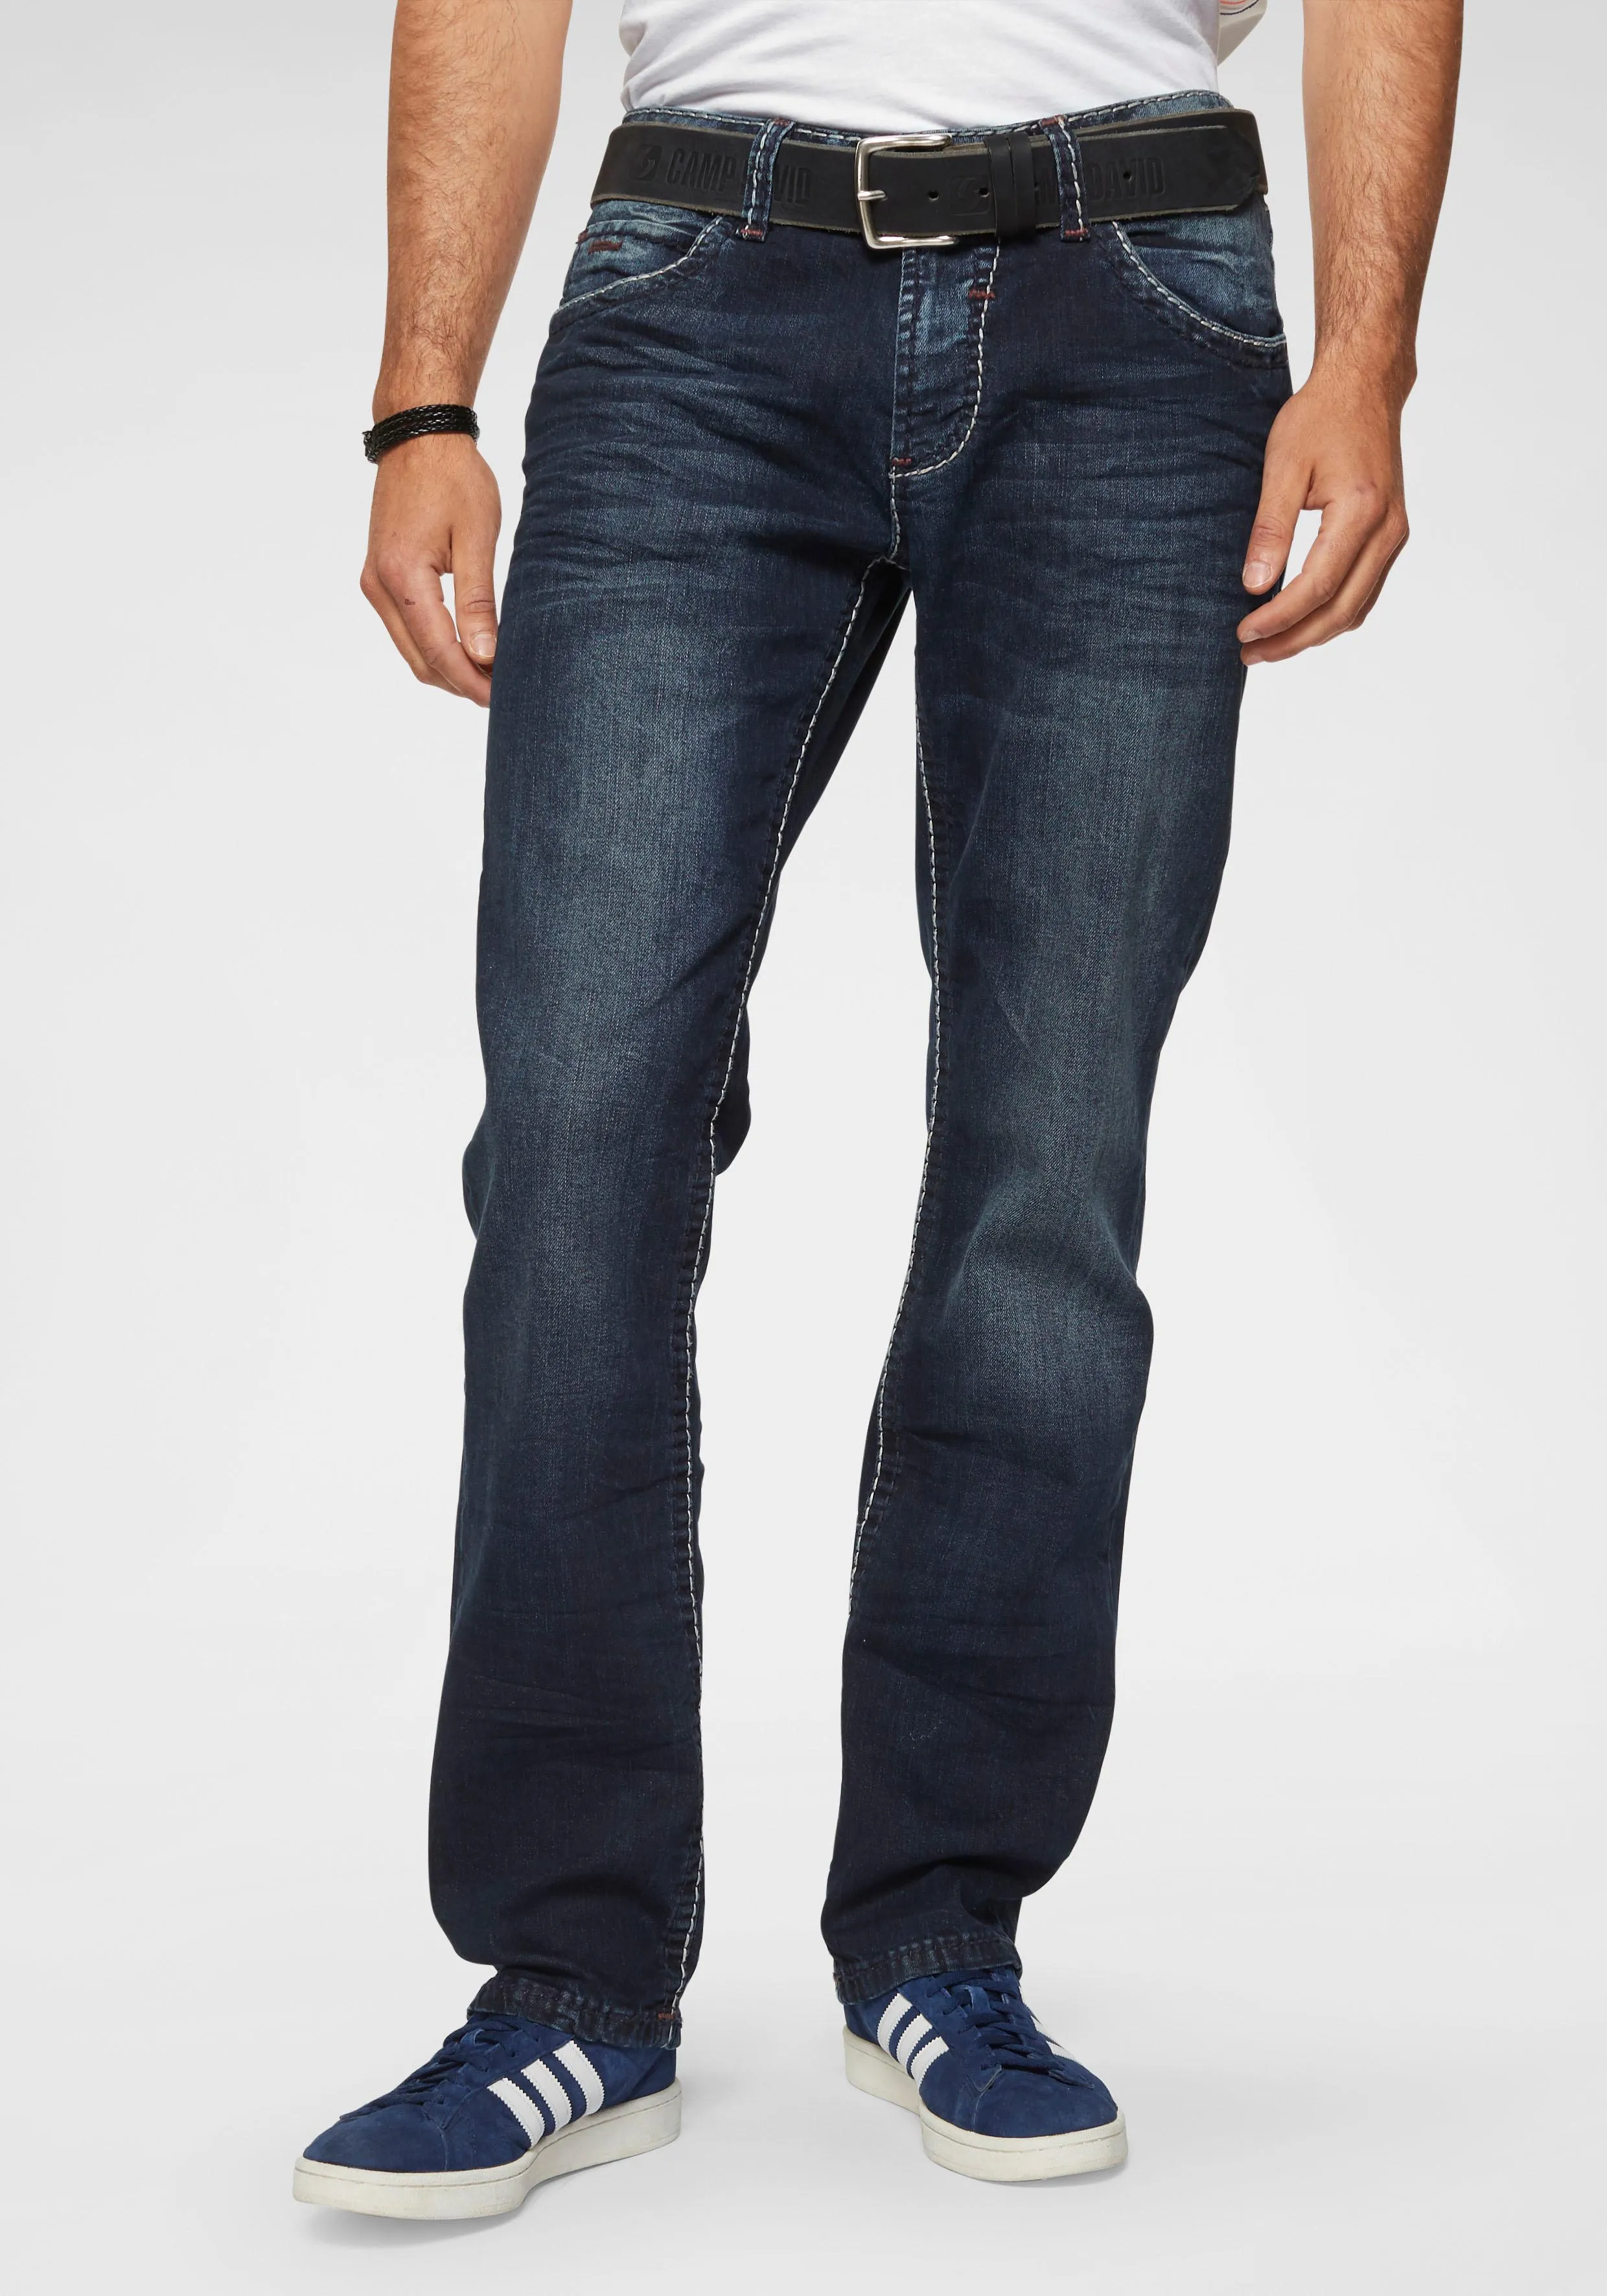 Straight-Jeans CAMP DAVID "NI:CO:R611" Gr. 38, Länge 34, blau (dark, used) Herren Jeans Straight Fit mit markanten Steppnähten